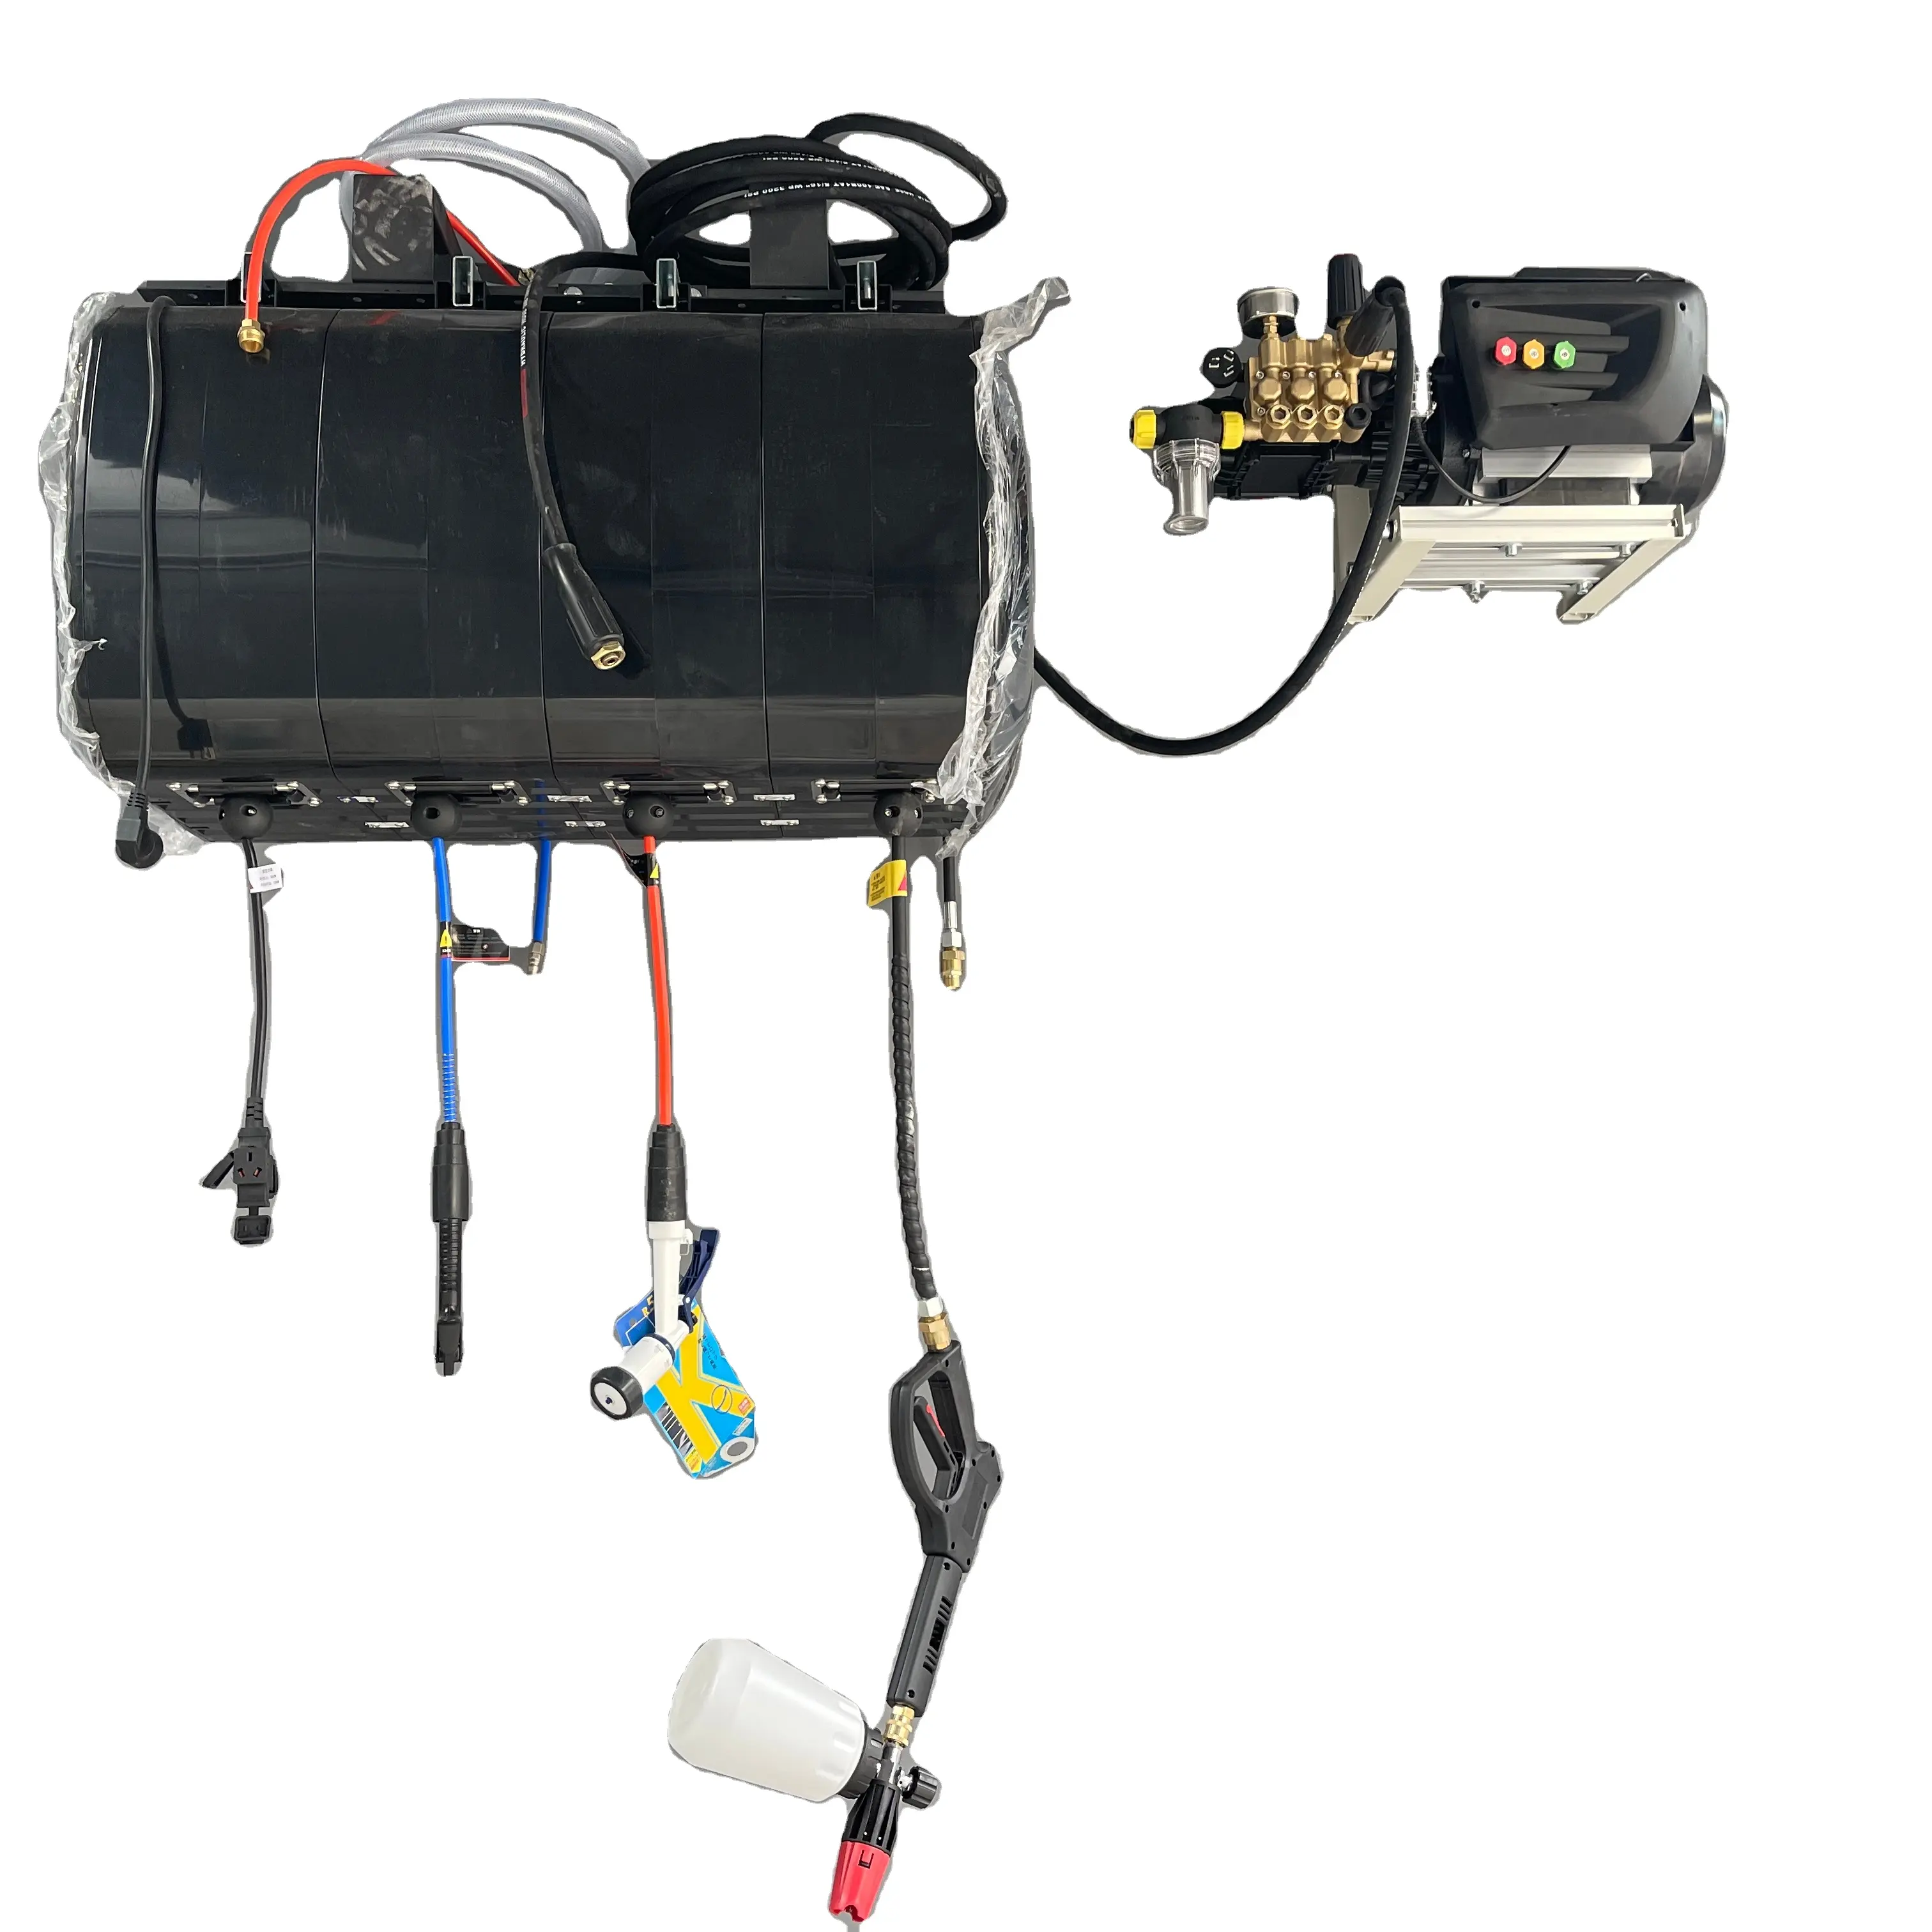 Klcb ท่อเดี่ยวไฟฟ้า/น้ำ/แรงดันสูง/อากาศล้างรถเวิร์คช็อปรายละเอียดอุปกรณ์เครื่องซักผ้าแรงดันท่อรีล